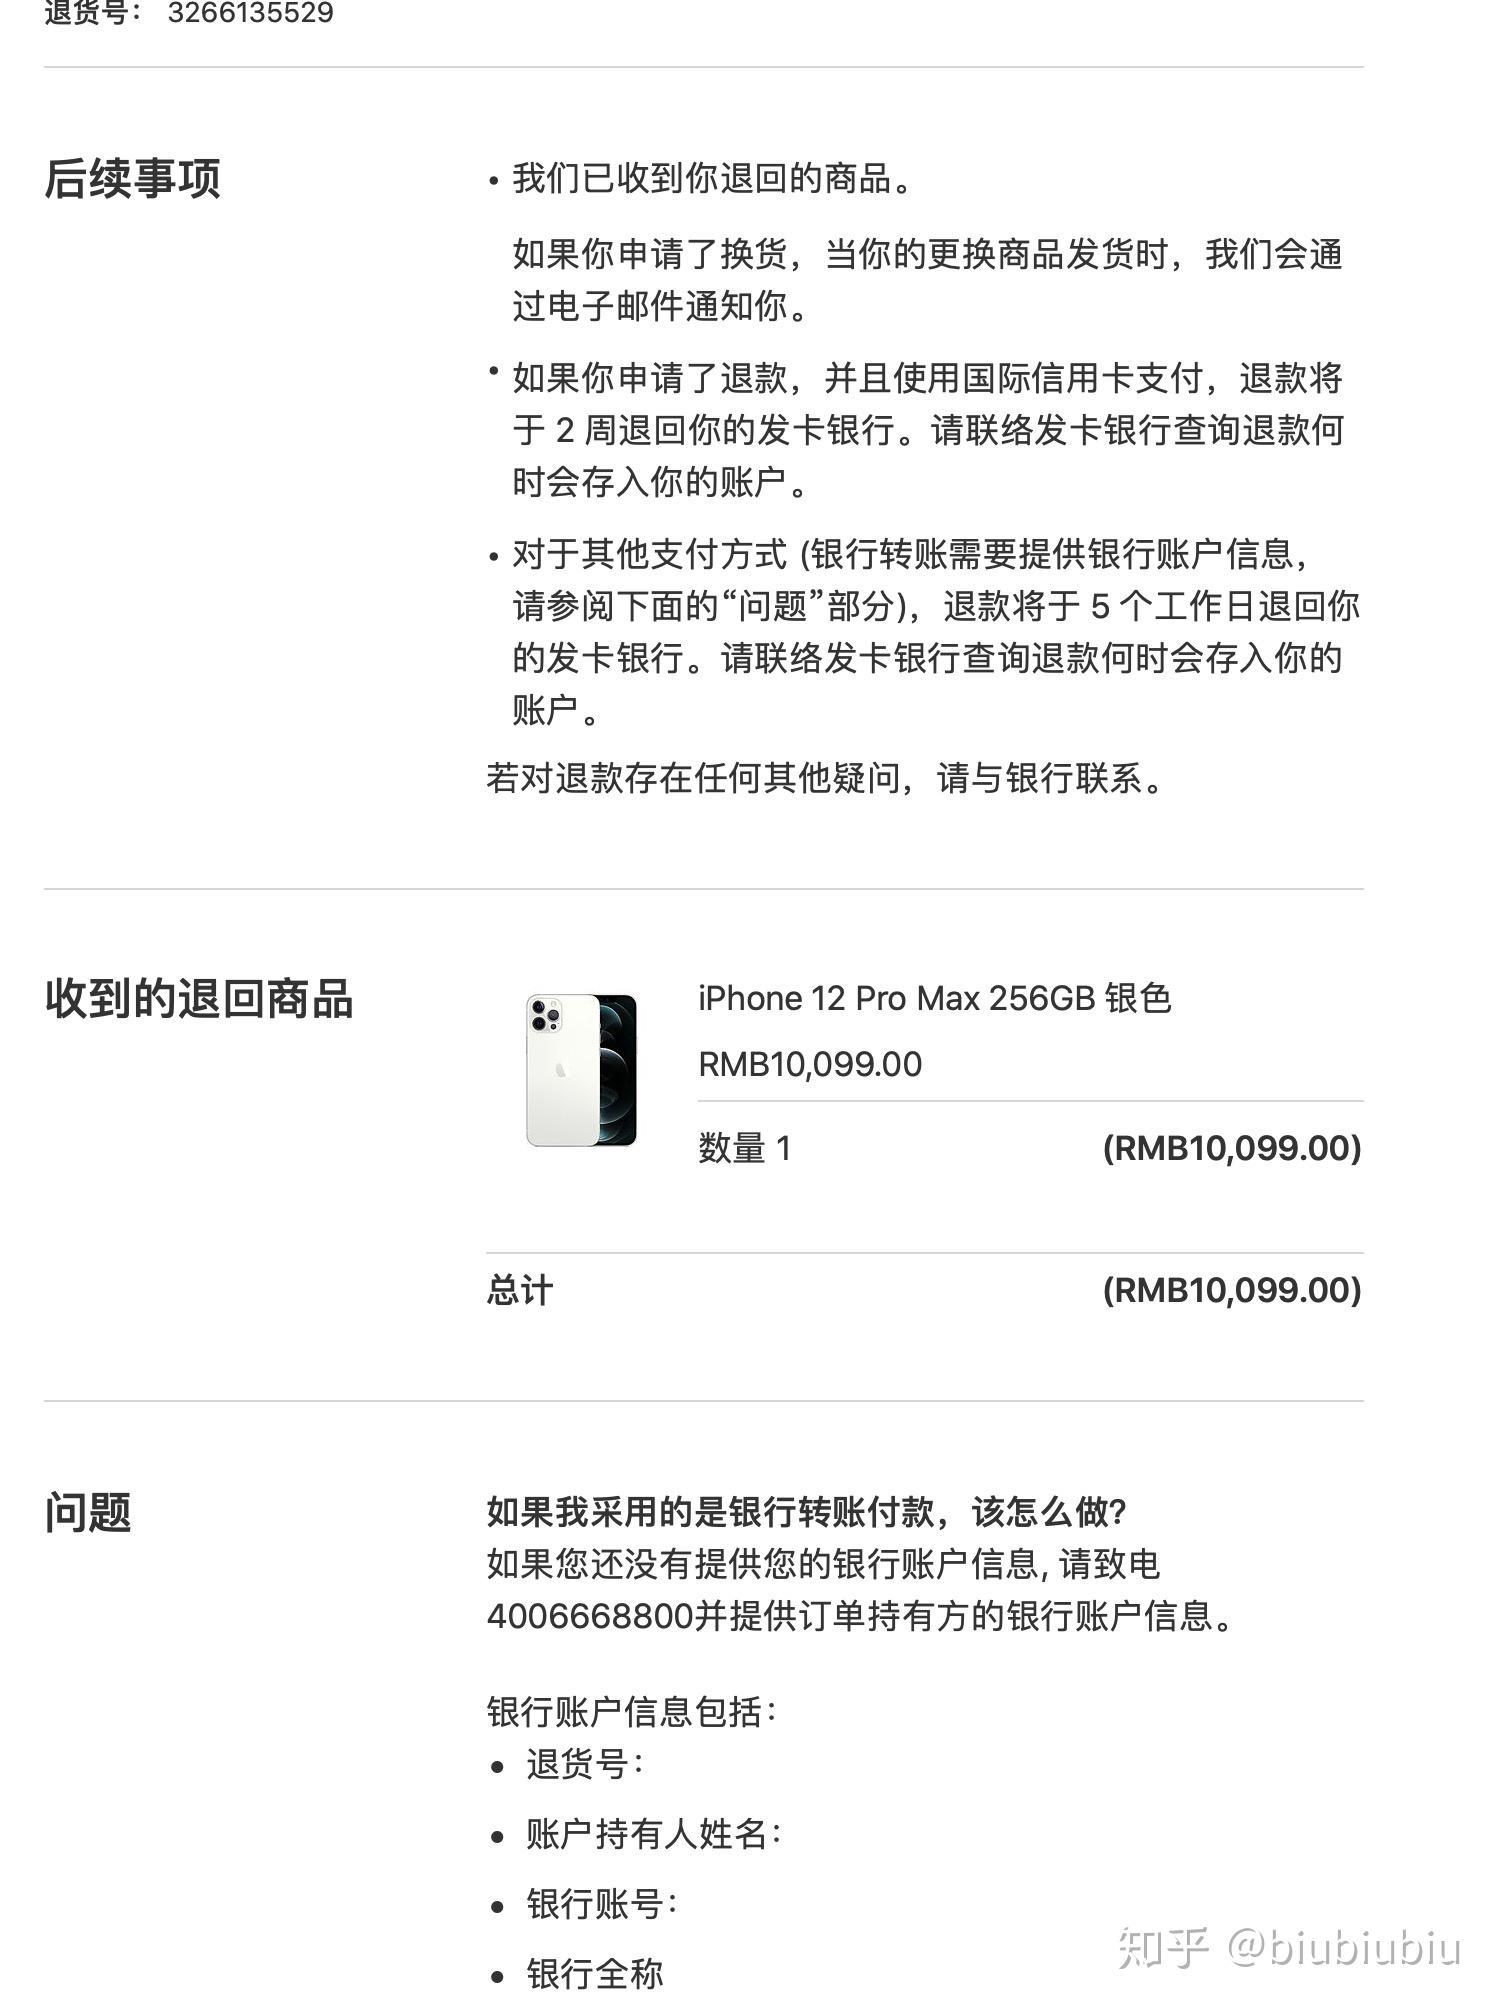 苹果官网上线《节日好礼精选》_Apple_AirPods_Mac